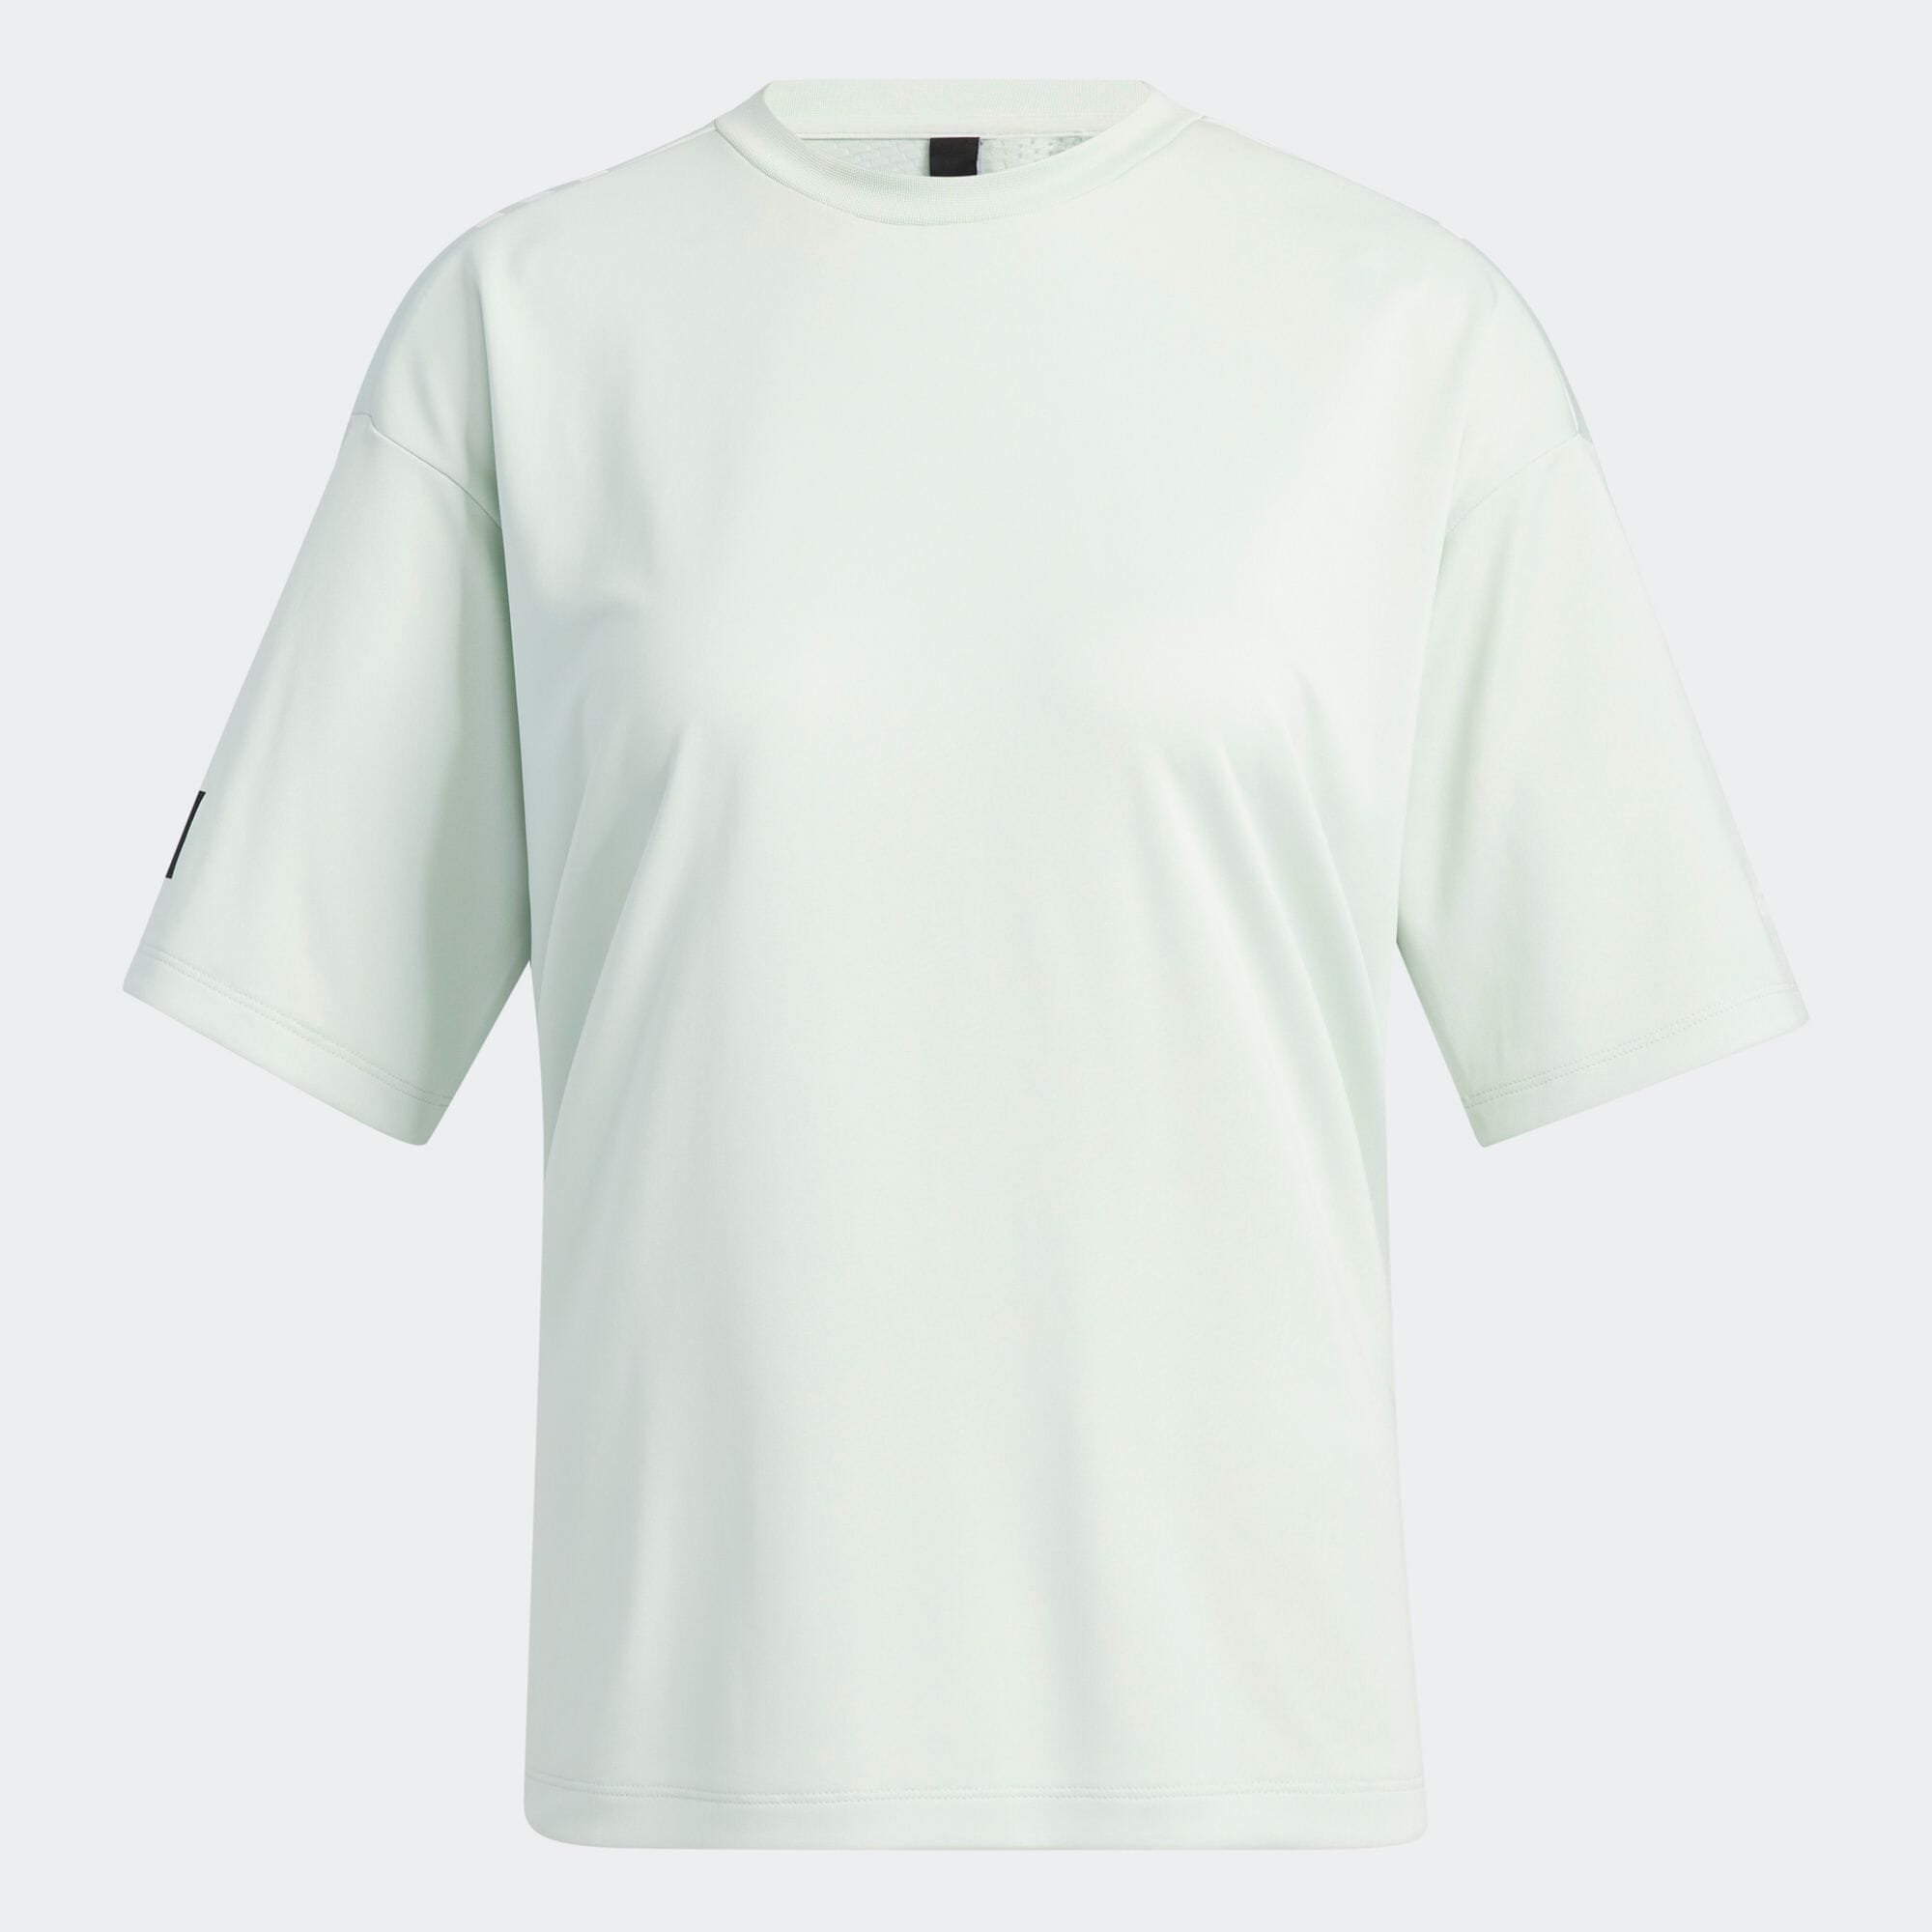 ID 2 ルーズフィット セーラー 半袖Tシャツ レディース スポーツウェア